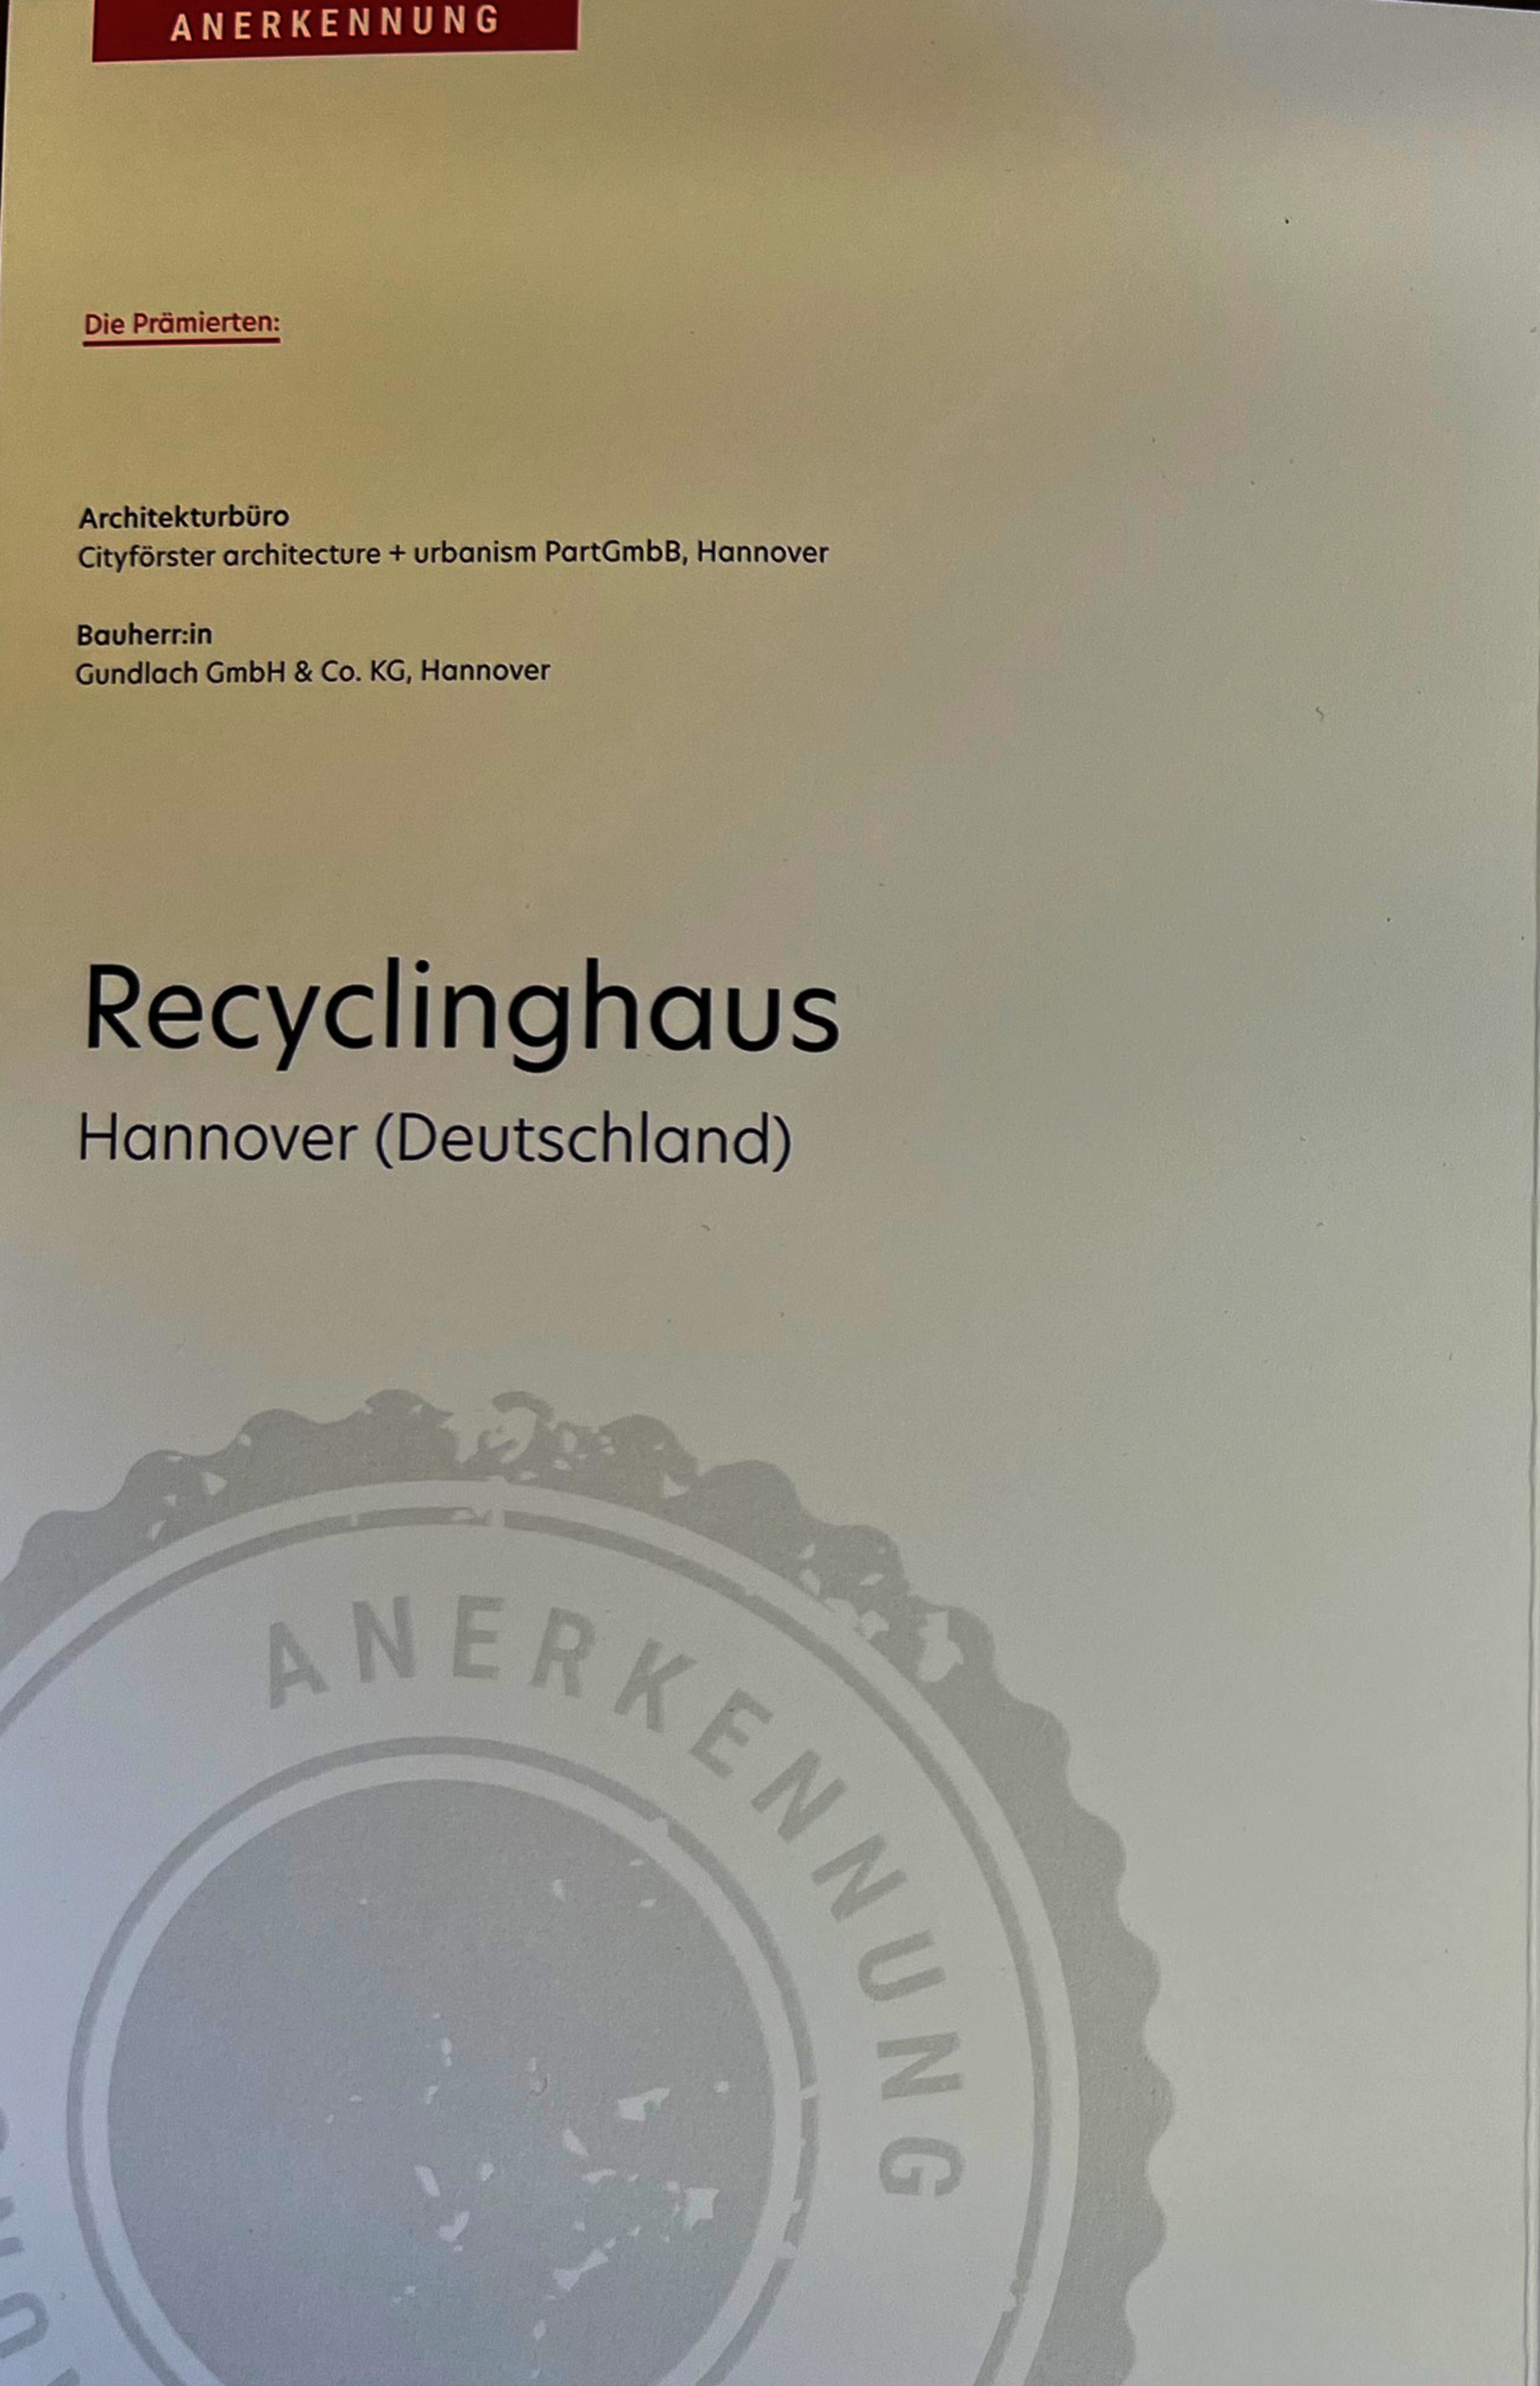 Recyclinghaus Gestaltungspreis der Wüstenrot-Stiftung